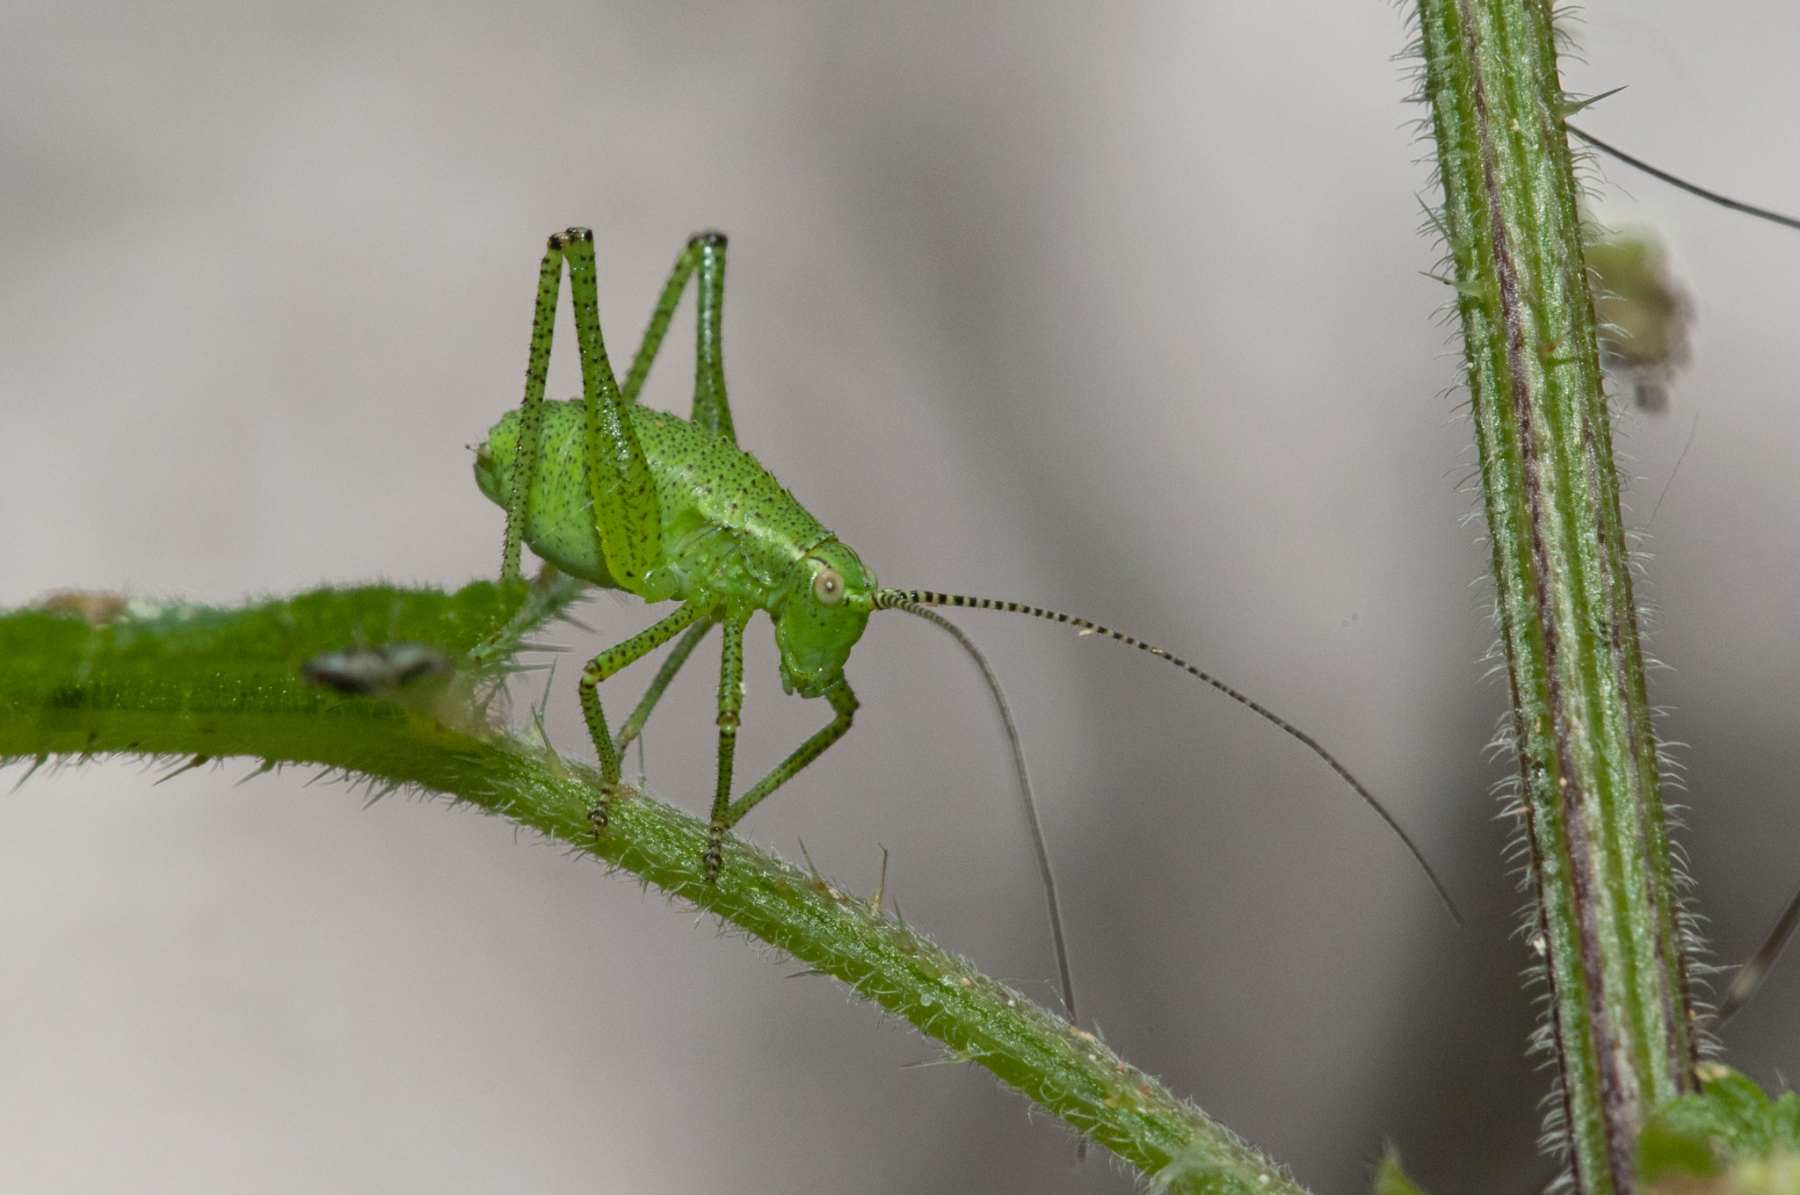 Leptophyes punctatissima - Speckled Bush Cricket (Juvenile male), Barrow Hills NR